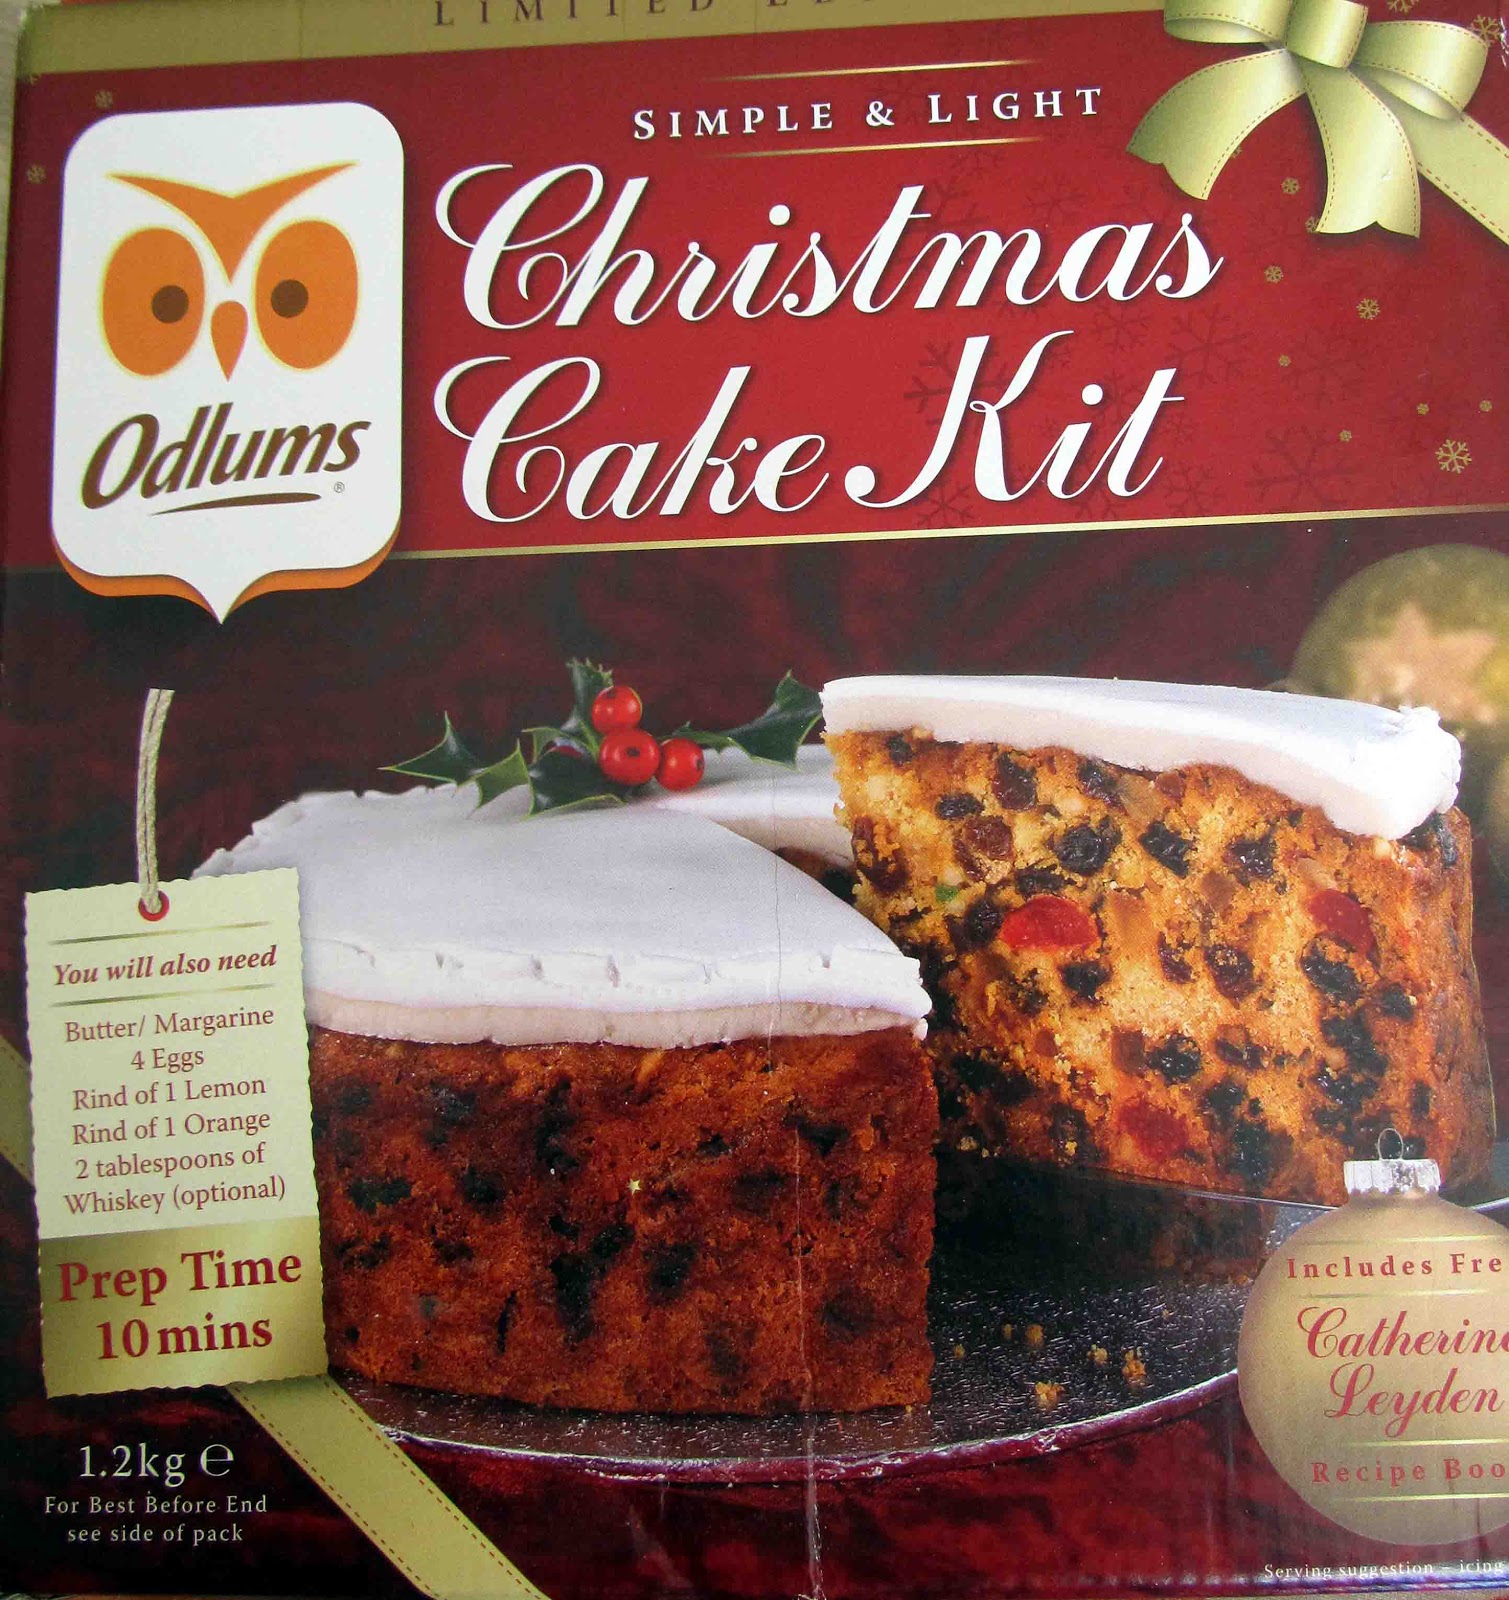 This Christmas Cake kit works!